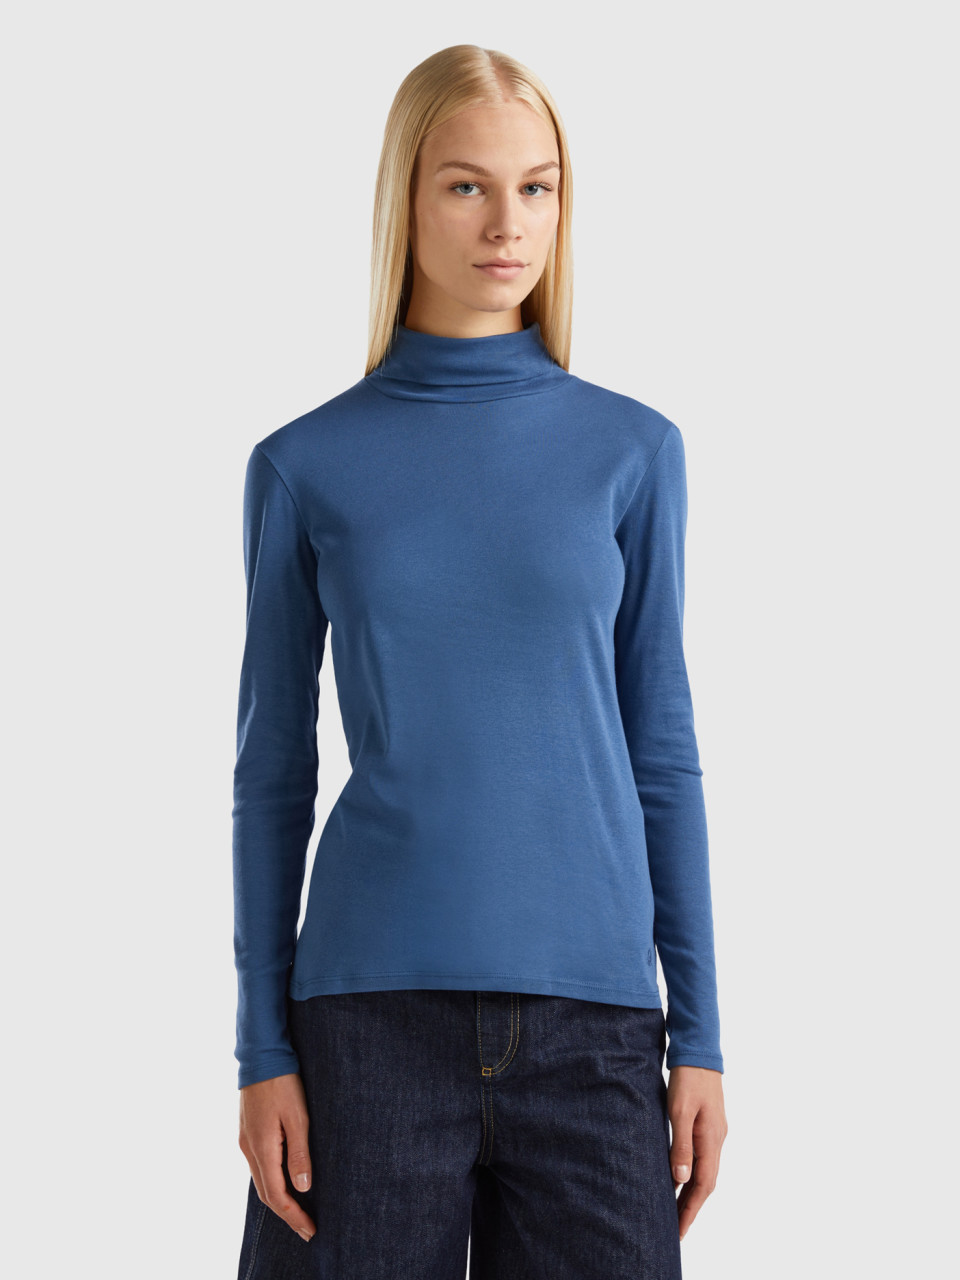 Benetton, T-shirt Mit Langen Ärmeln Und Hohem Kragen, Taubenblau, female